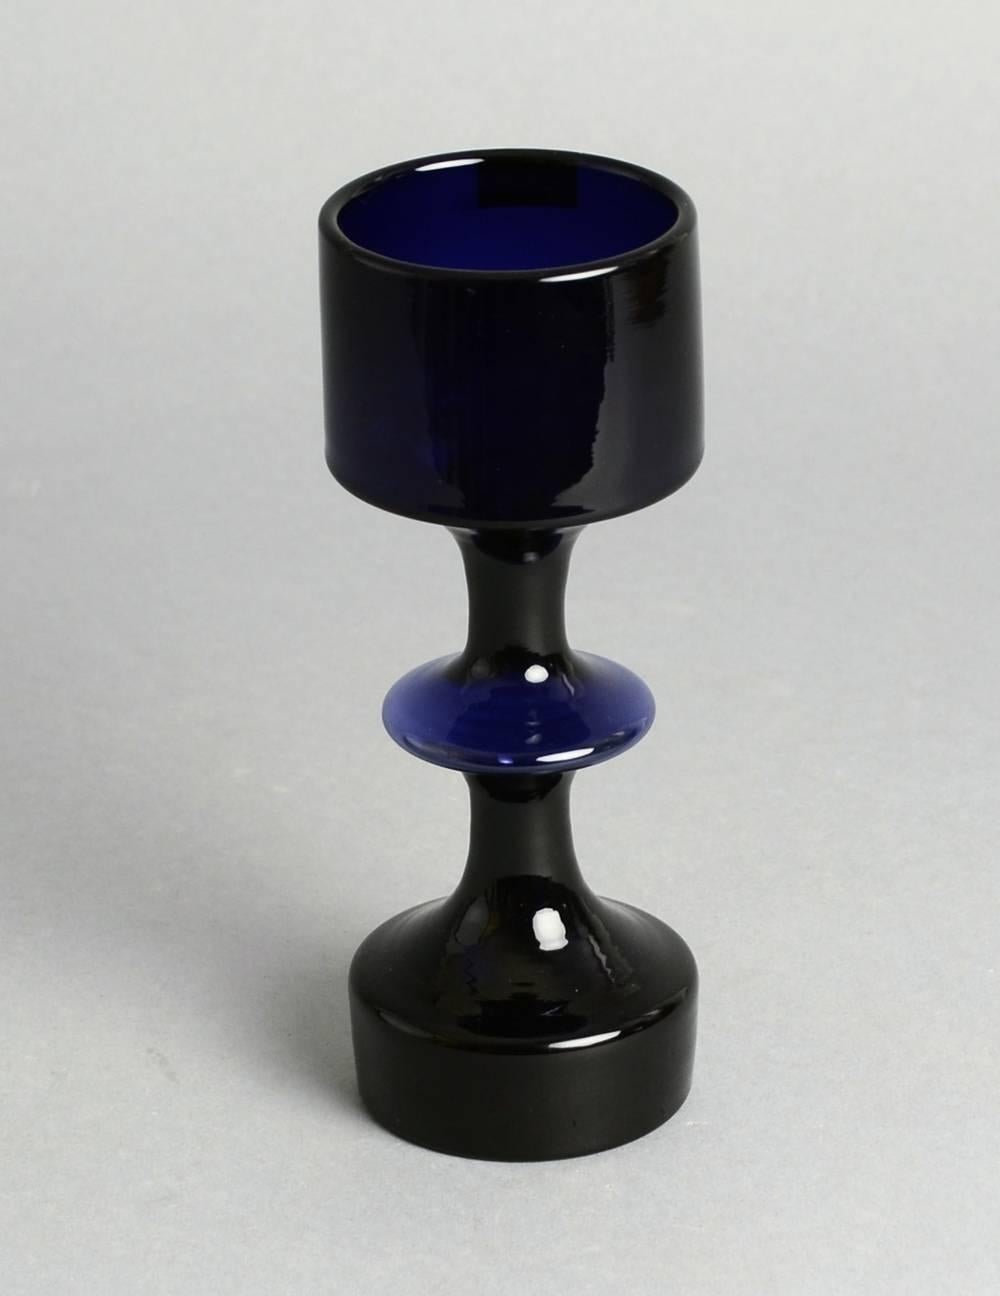 Kaj Franck for Nuutäjarvi-Nottsjö

1. Goblet vase in blue glass, 1964.
Height 7" (18cm) Width 2 1/2" (6.5cm) No. N9776
2. Segmented vase in black glass.
Height 9 1/4" (23.5 cm) Width 3 1/2" (9cm) No. N9511
3. Decanter in